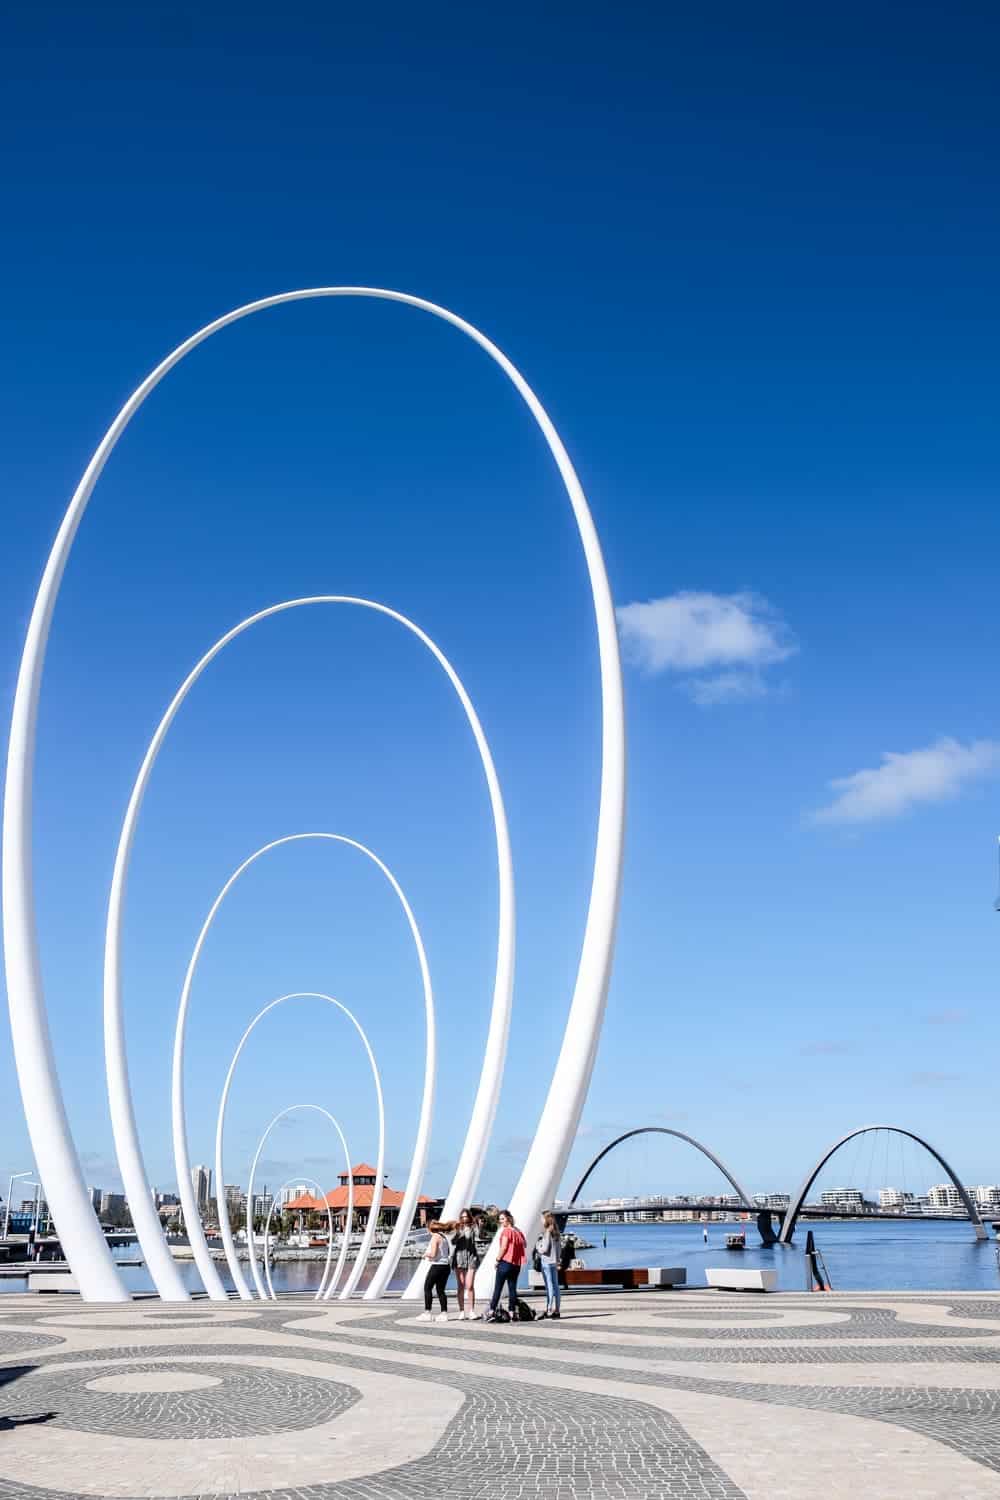 El diseño arquitectónico de bucle blanco que domina el proyecto de desarrollo frente al mar Elizabeth Quay en Perth, Australia